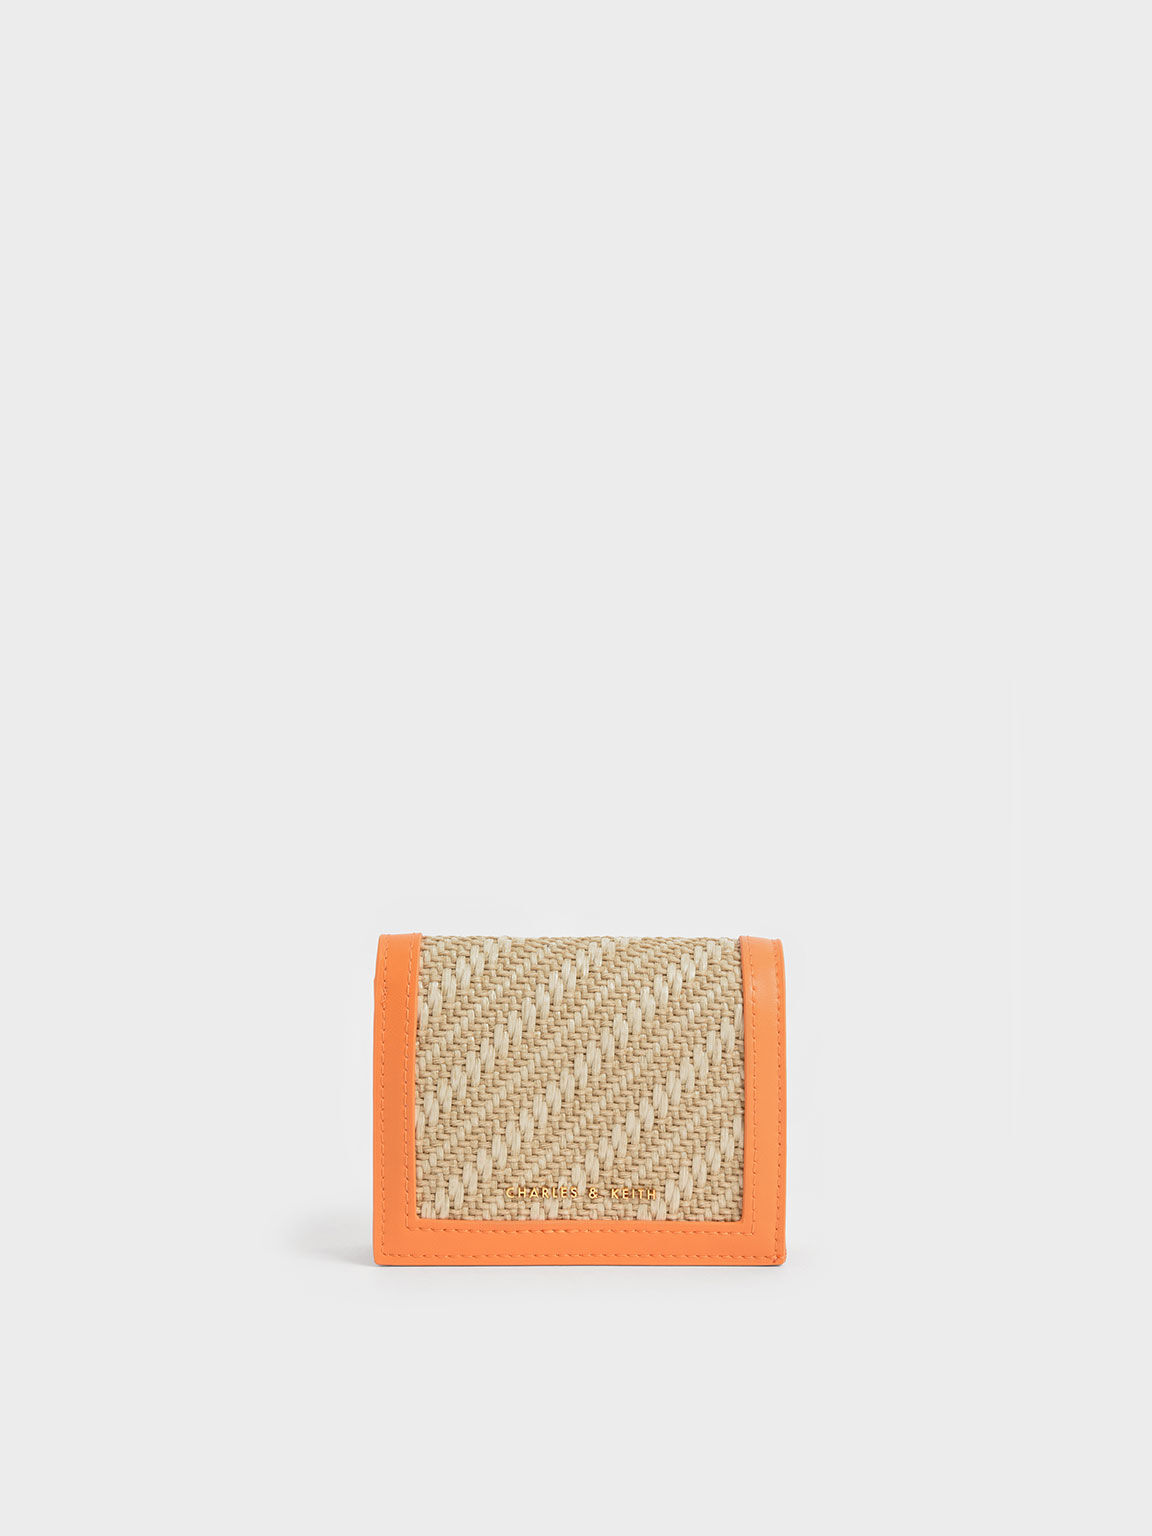 編織摺疊短夾, 橘色, hi-res